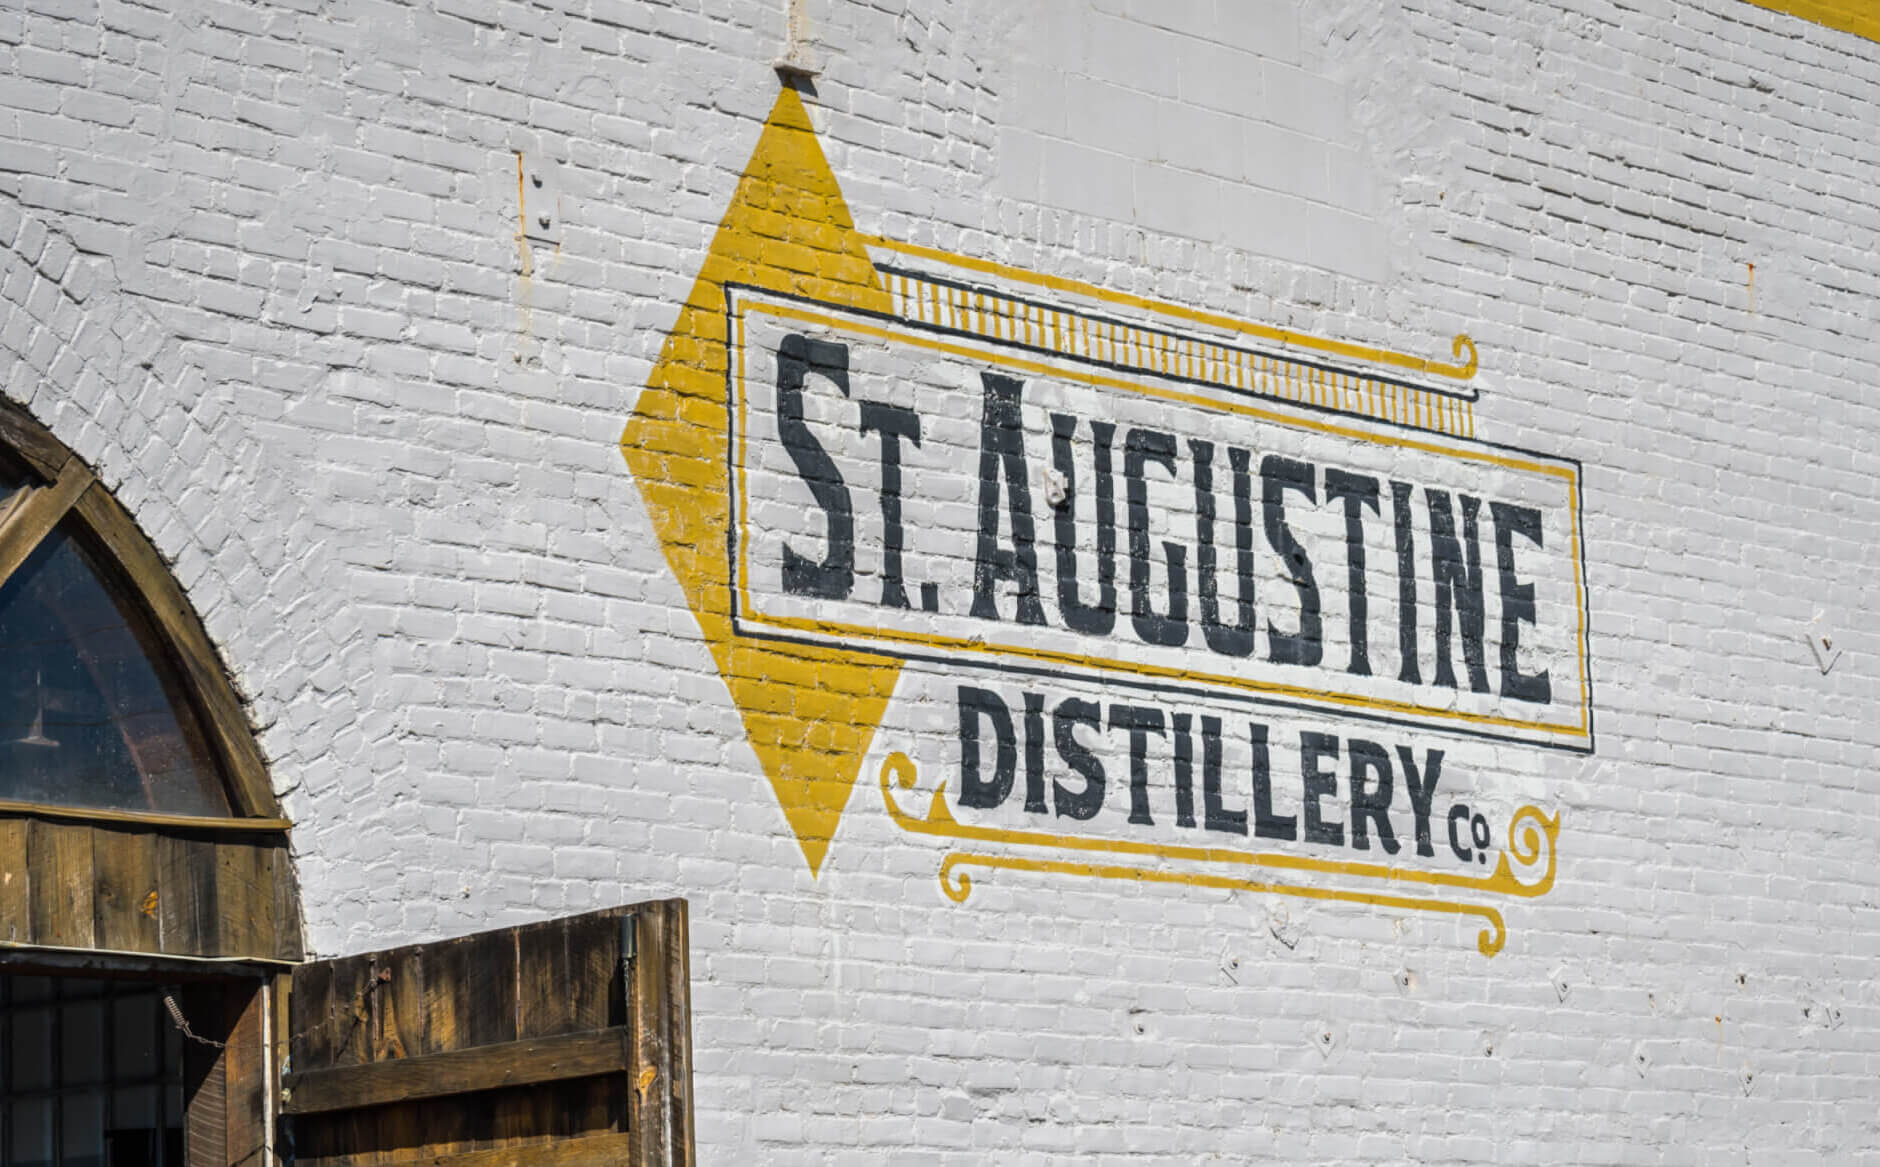 St. Augustine Distillery in Florida